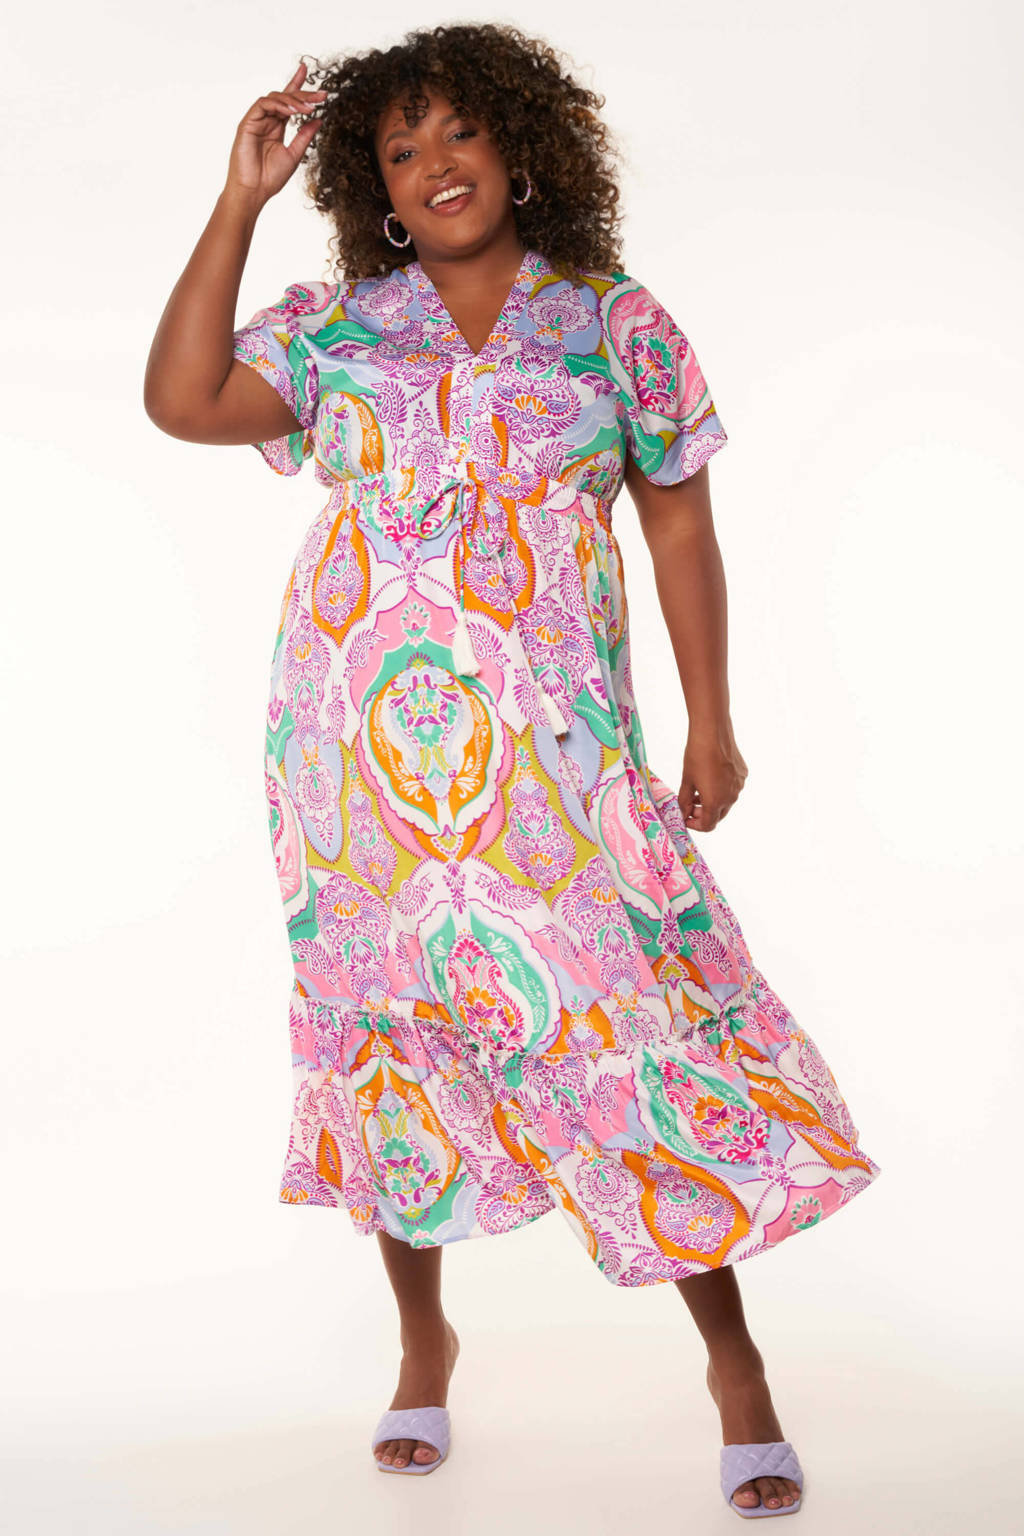 Bliksem Geruststellen zwaartekracht MS Mode jurk met all over print roze/blauw/oranje | wehkamp